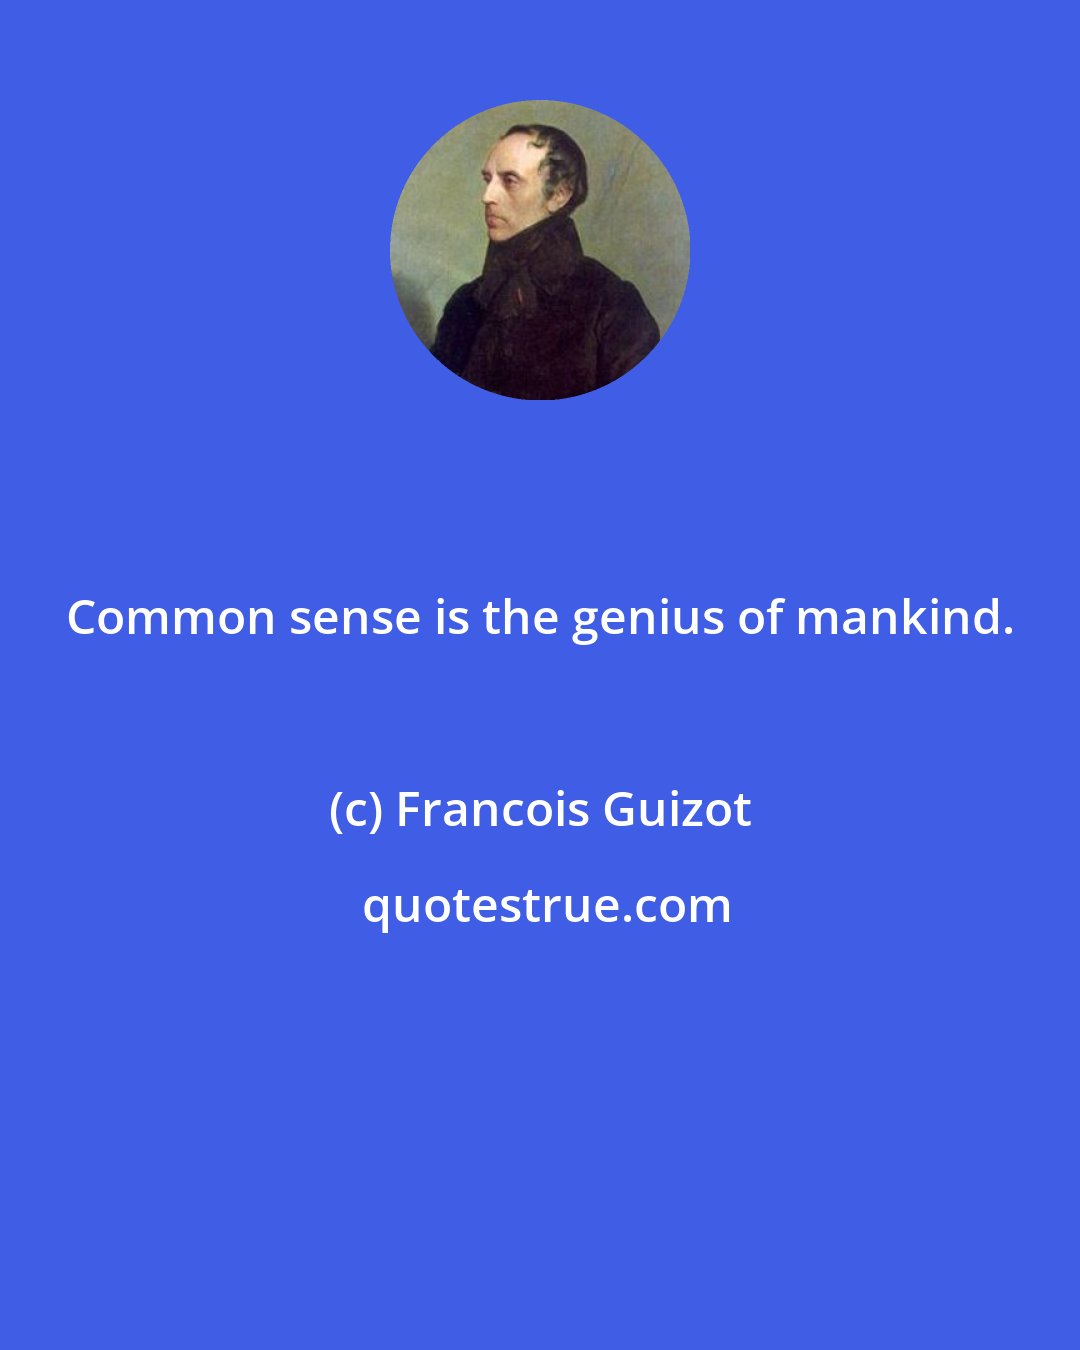 Francois Guizot: Common sense is the genius of mankind.